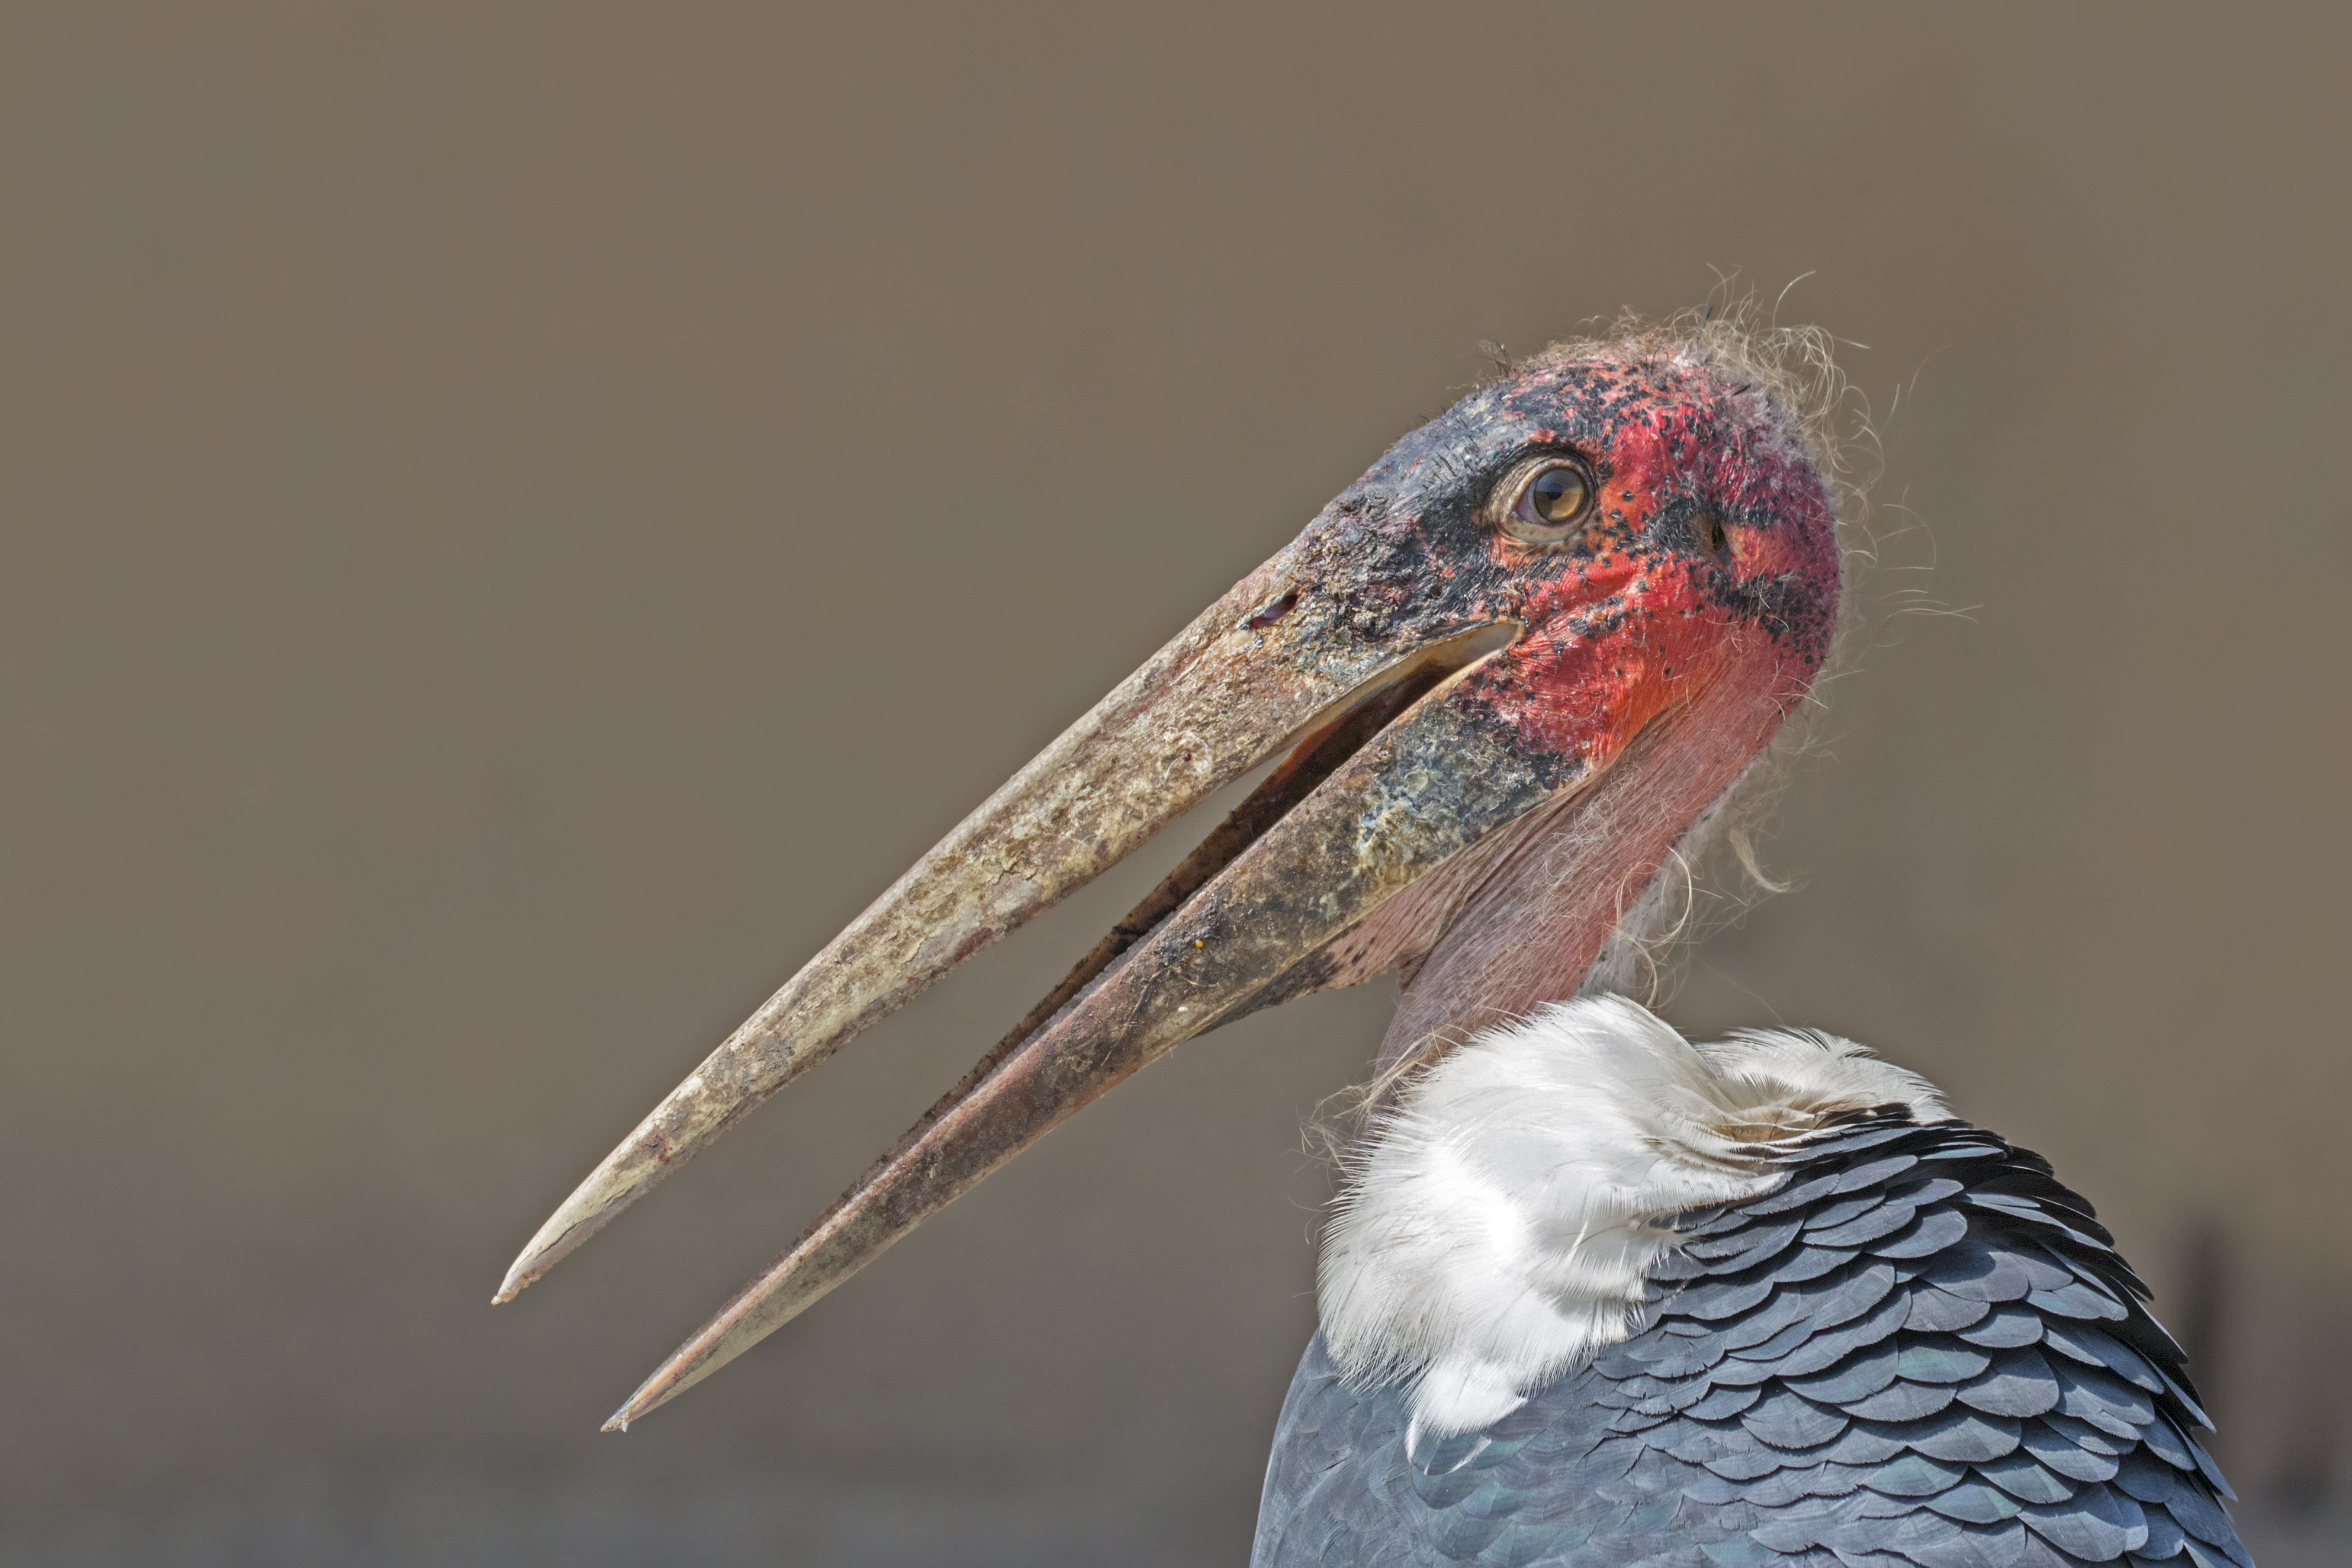 File:Marabou stork (Leptoptilos crumenifer) head.jpg - Wikimedia Commons